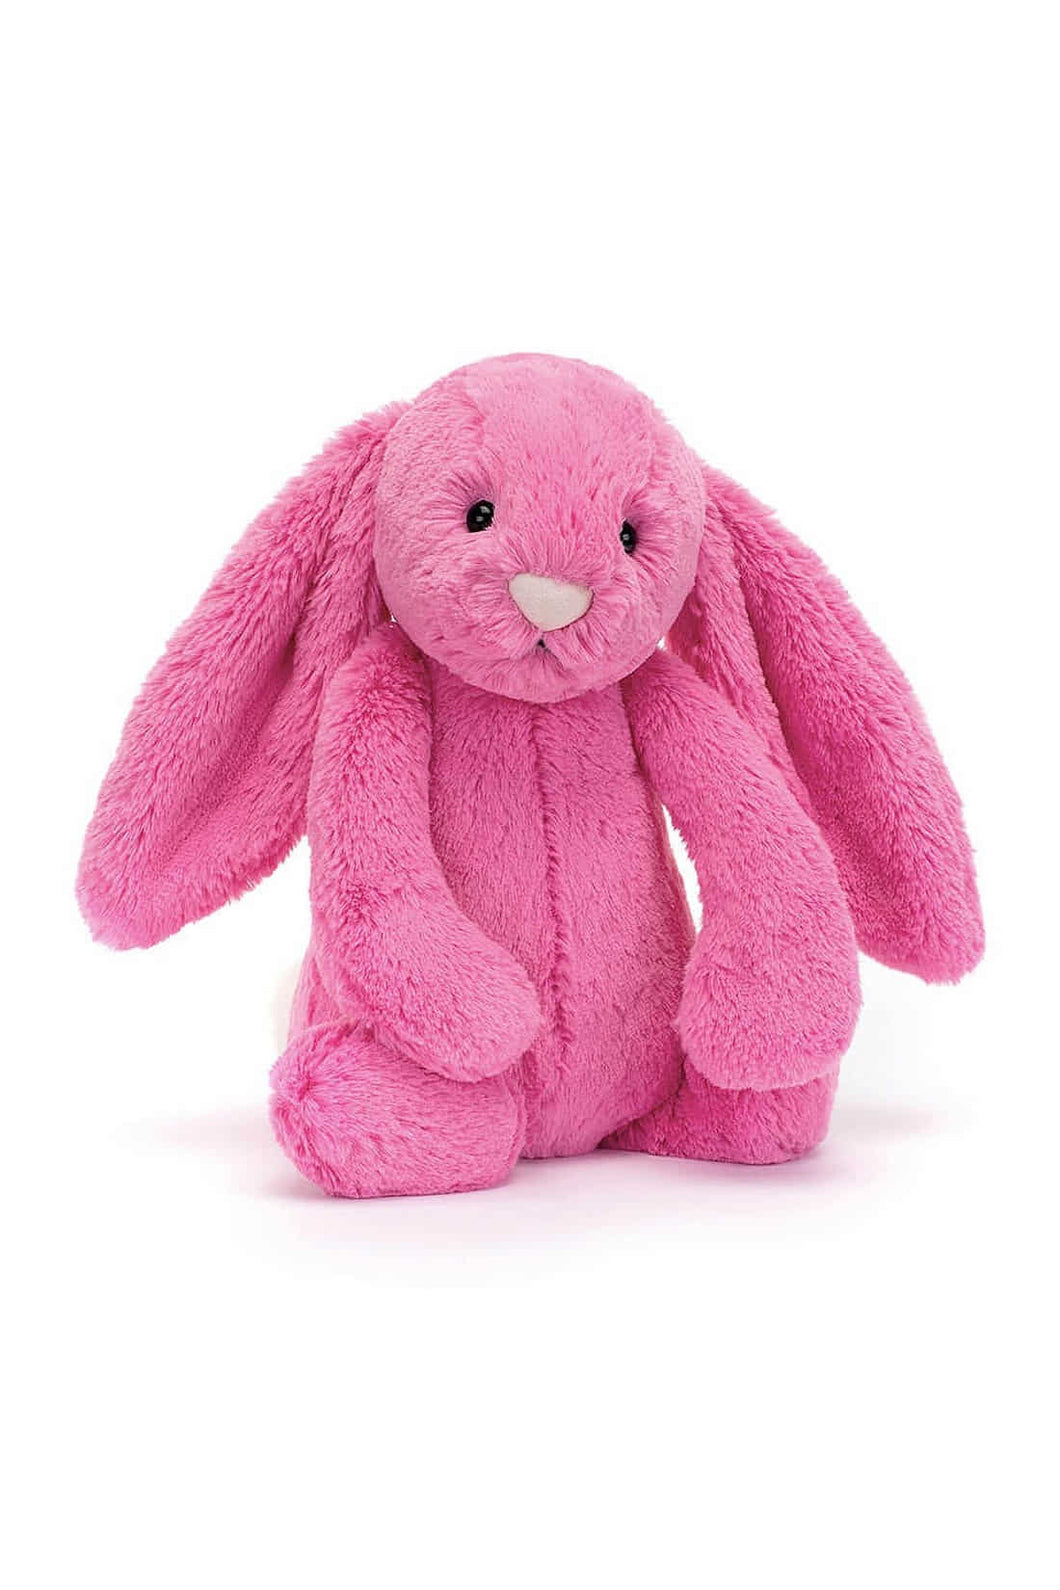 Jellycat Bashful Hot Pink Bunny 1